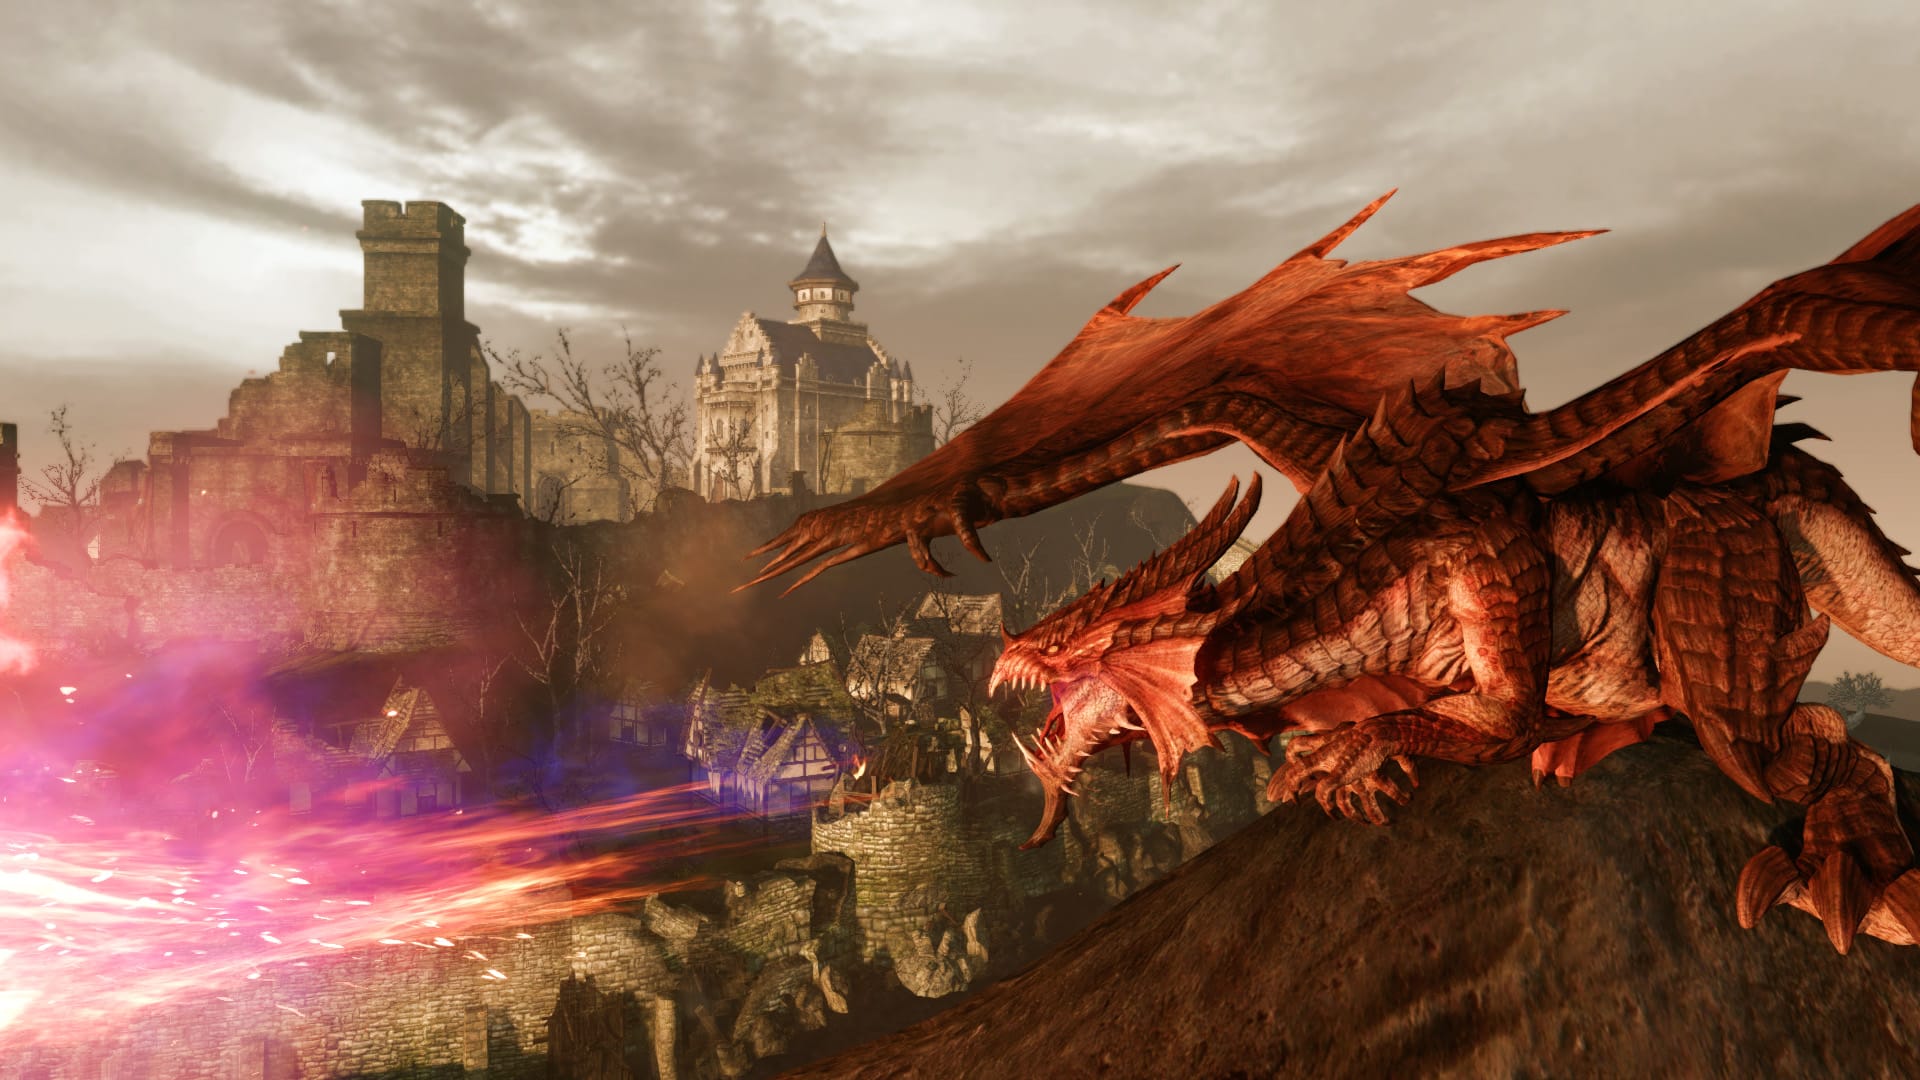 Best MMORPG games: Arcehage. Image shows a dragon near a town.